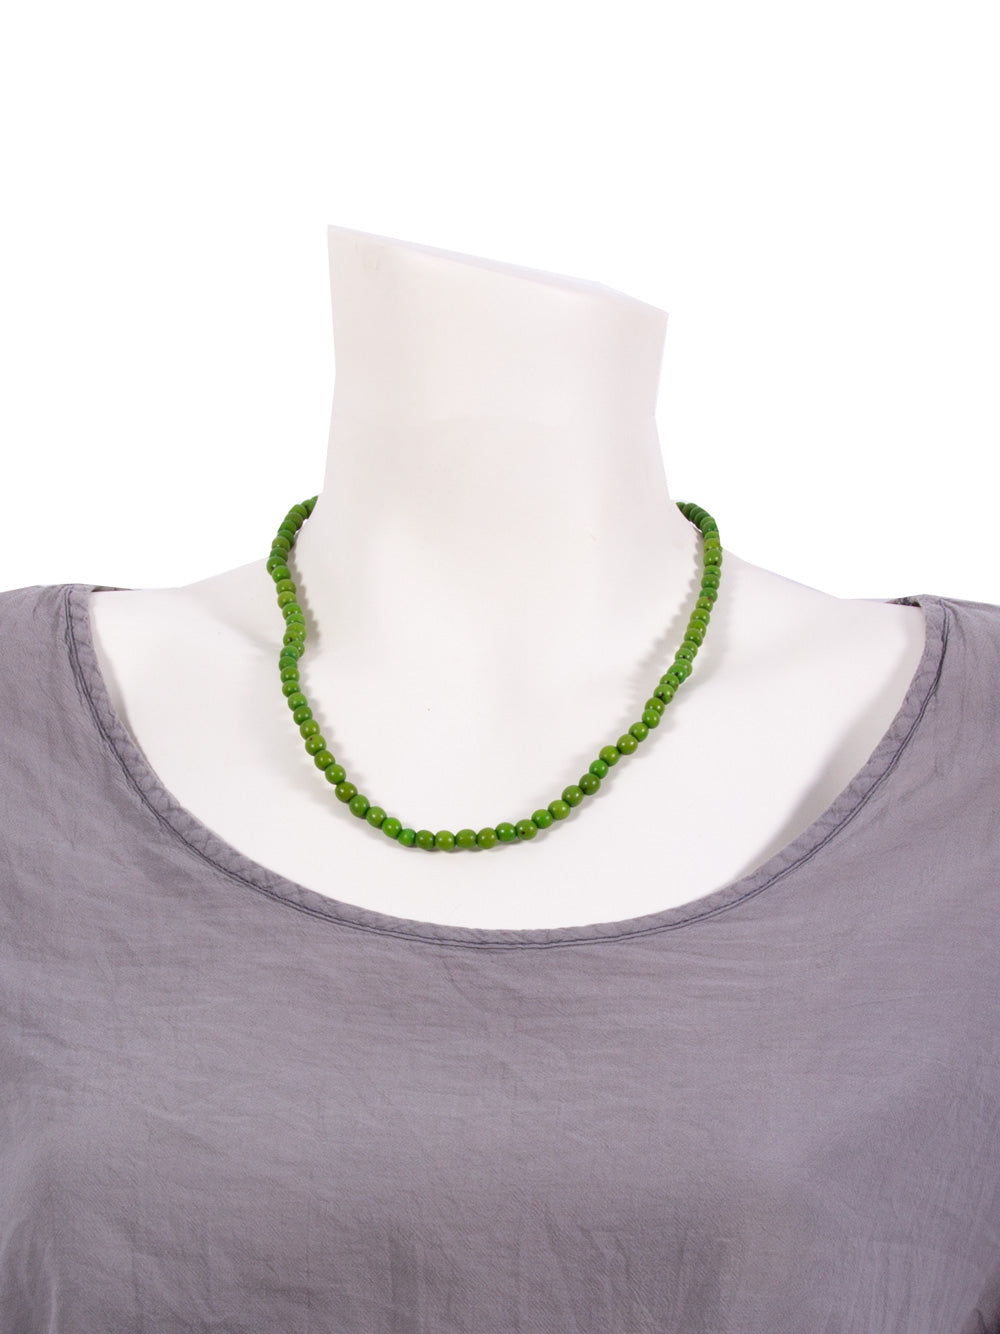 Halskette Chira apfelgrün - aus den Chirilla-Samen von La Tagua